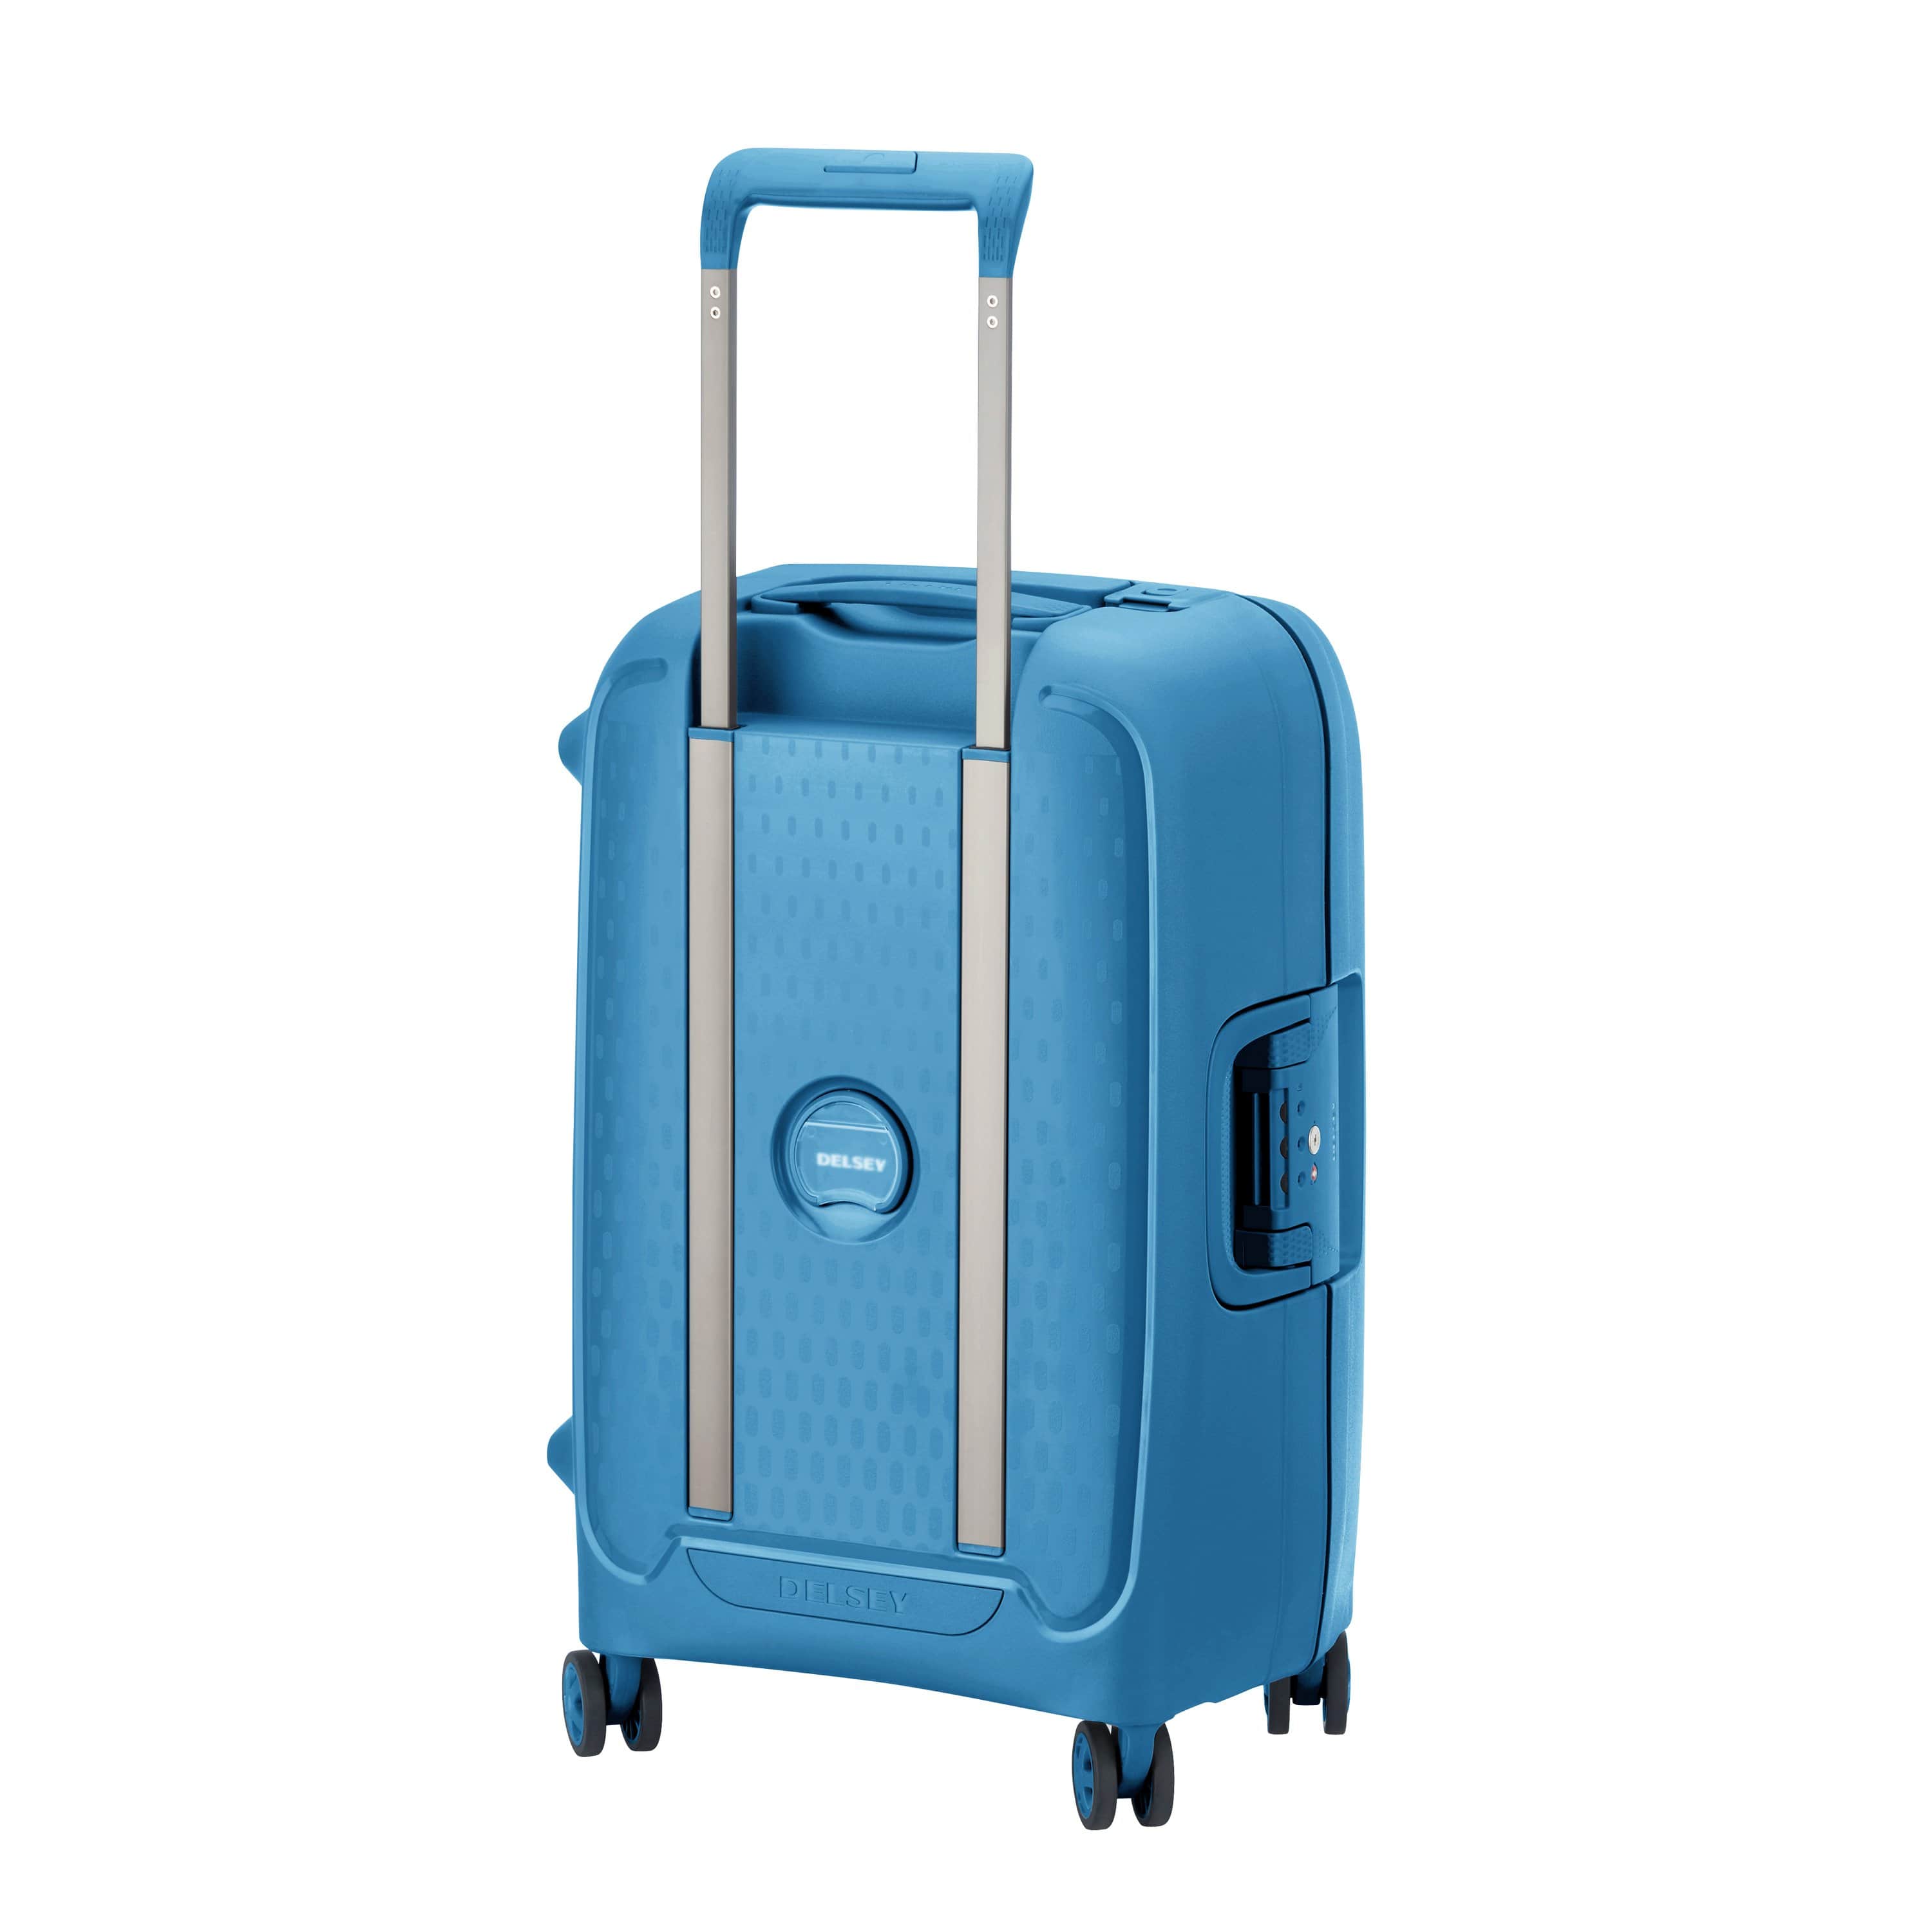 ديلسي مونسي – عربة حقائب سفر سوفت كيس 4 عجلات مزدوجة 55 سم – أزرق فاتح – 00384480112